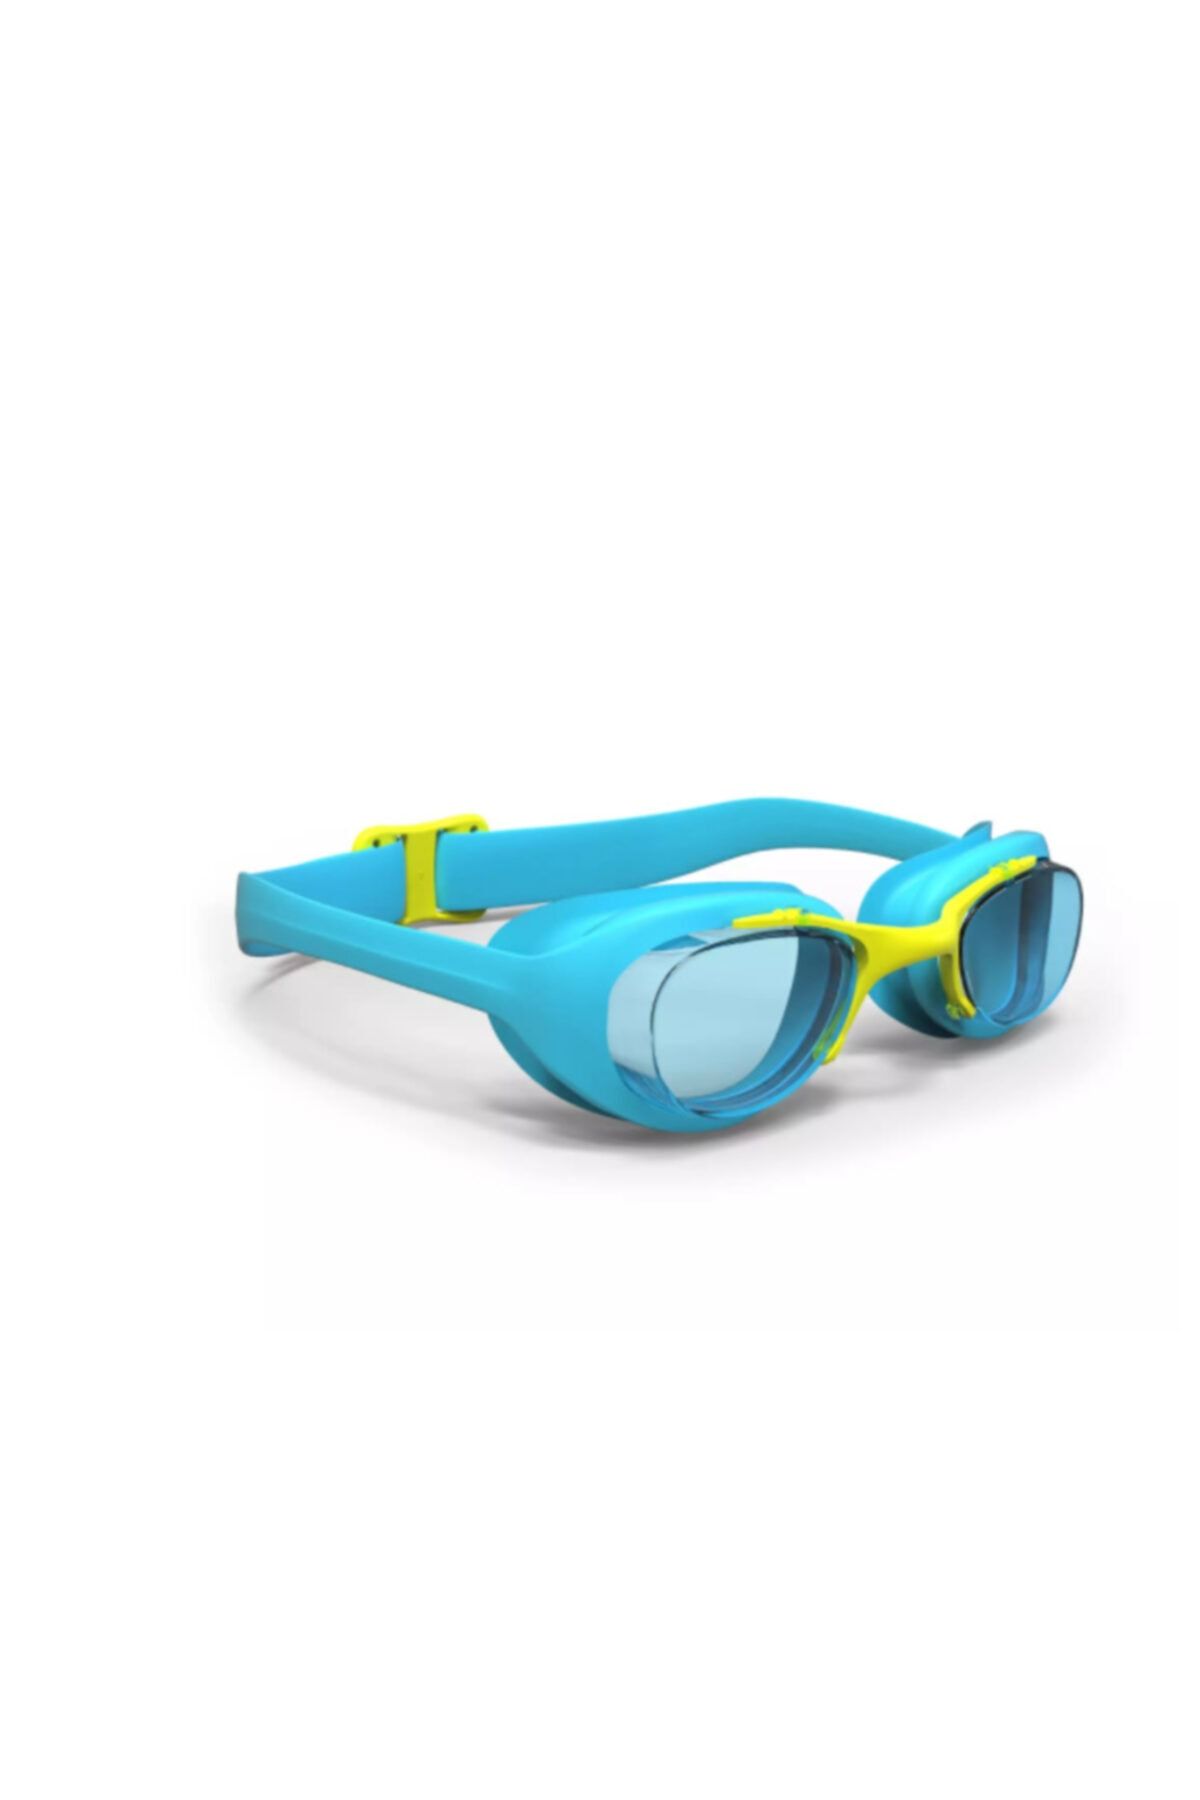 Decathlon Xbase Çocuk Yüzücü Gözlüğü Havuz Gözlüğü Mavi